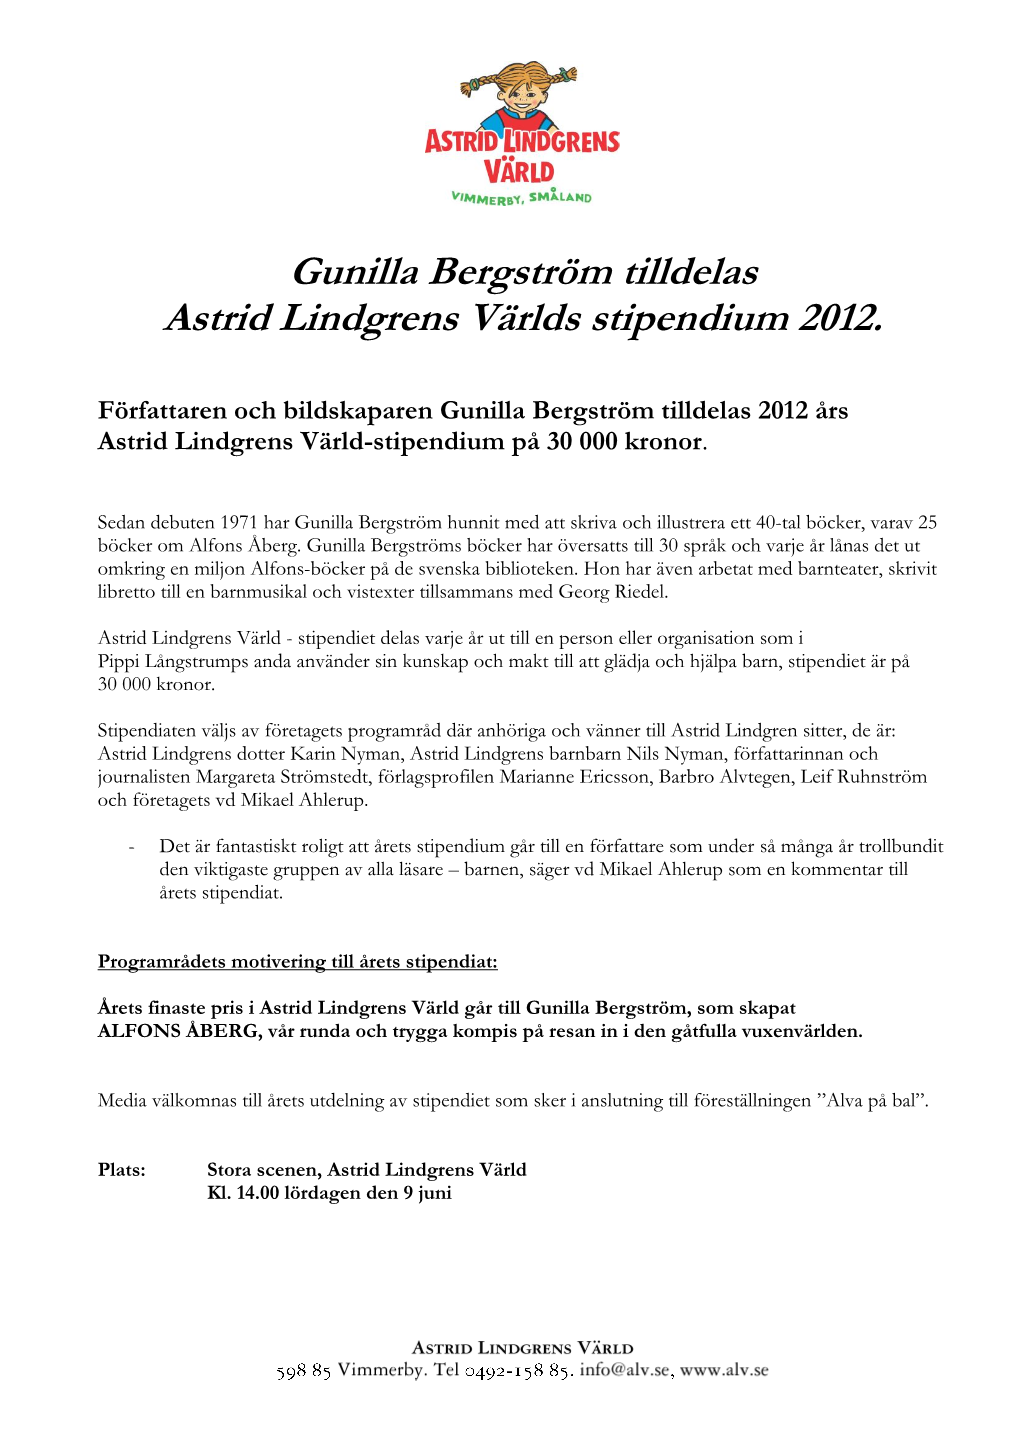 Gunilla Bergström Tilldelas Astrid Lindgrens Världs Stipendium 2012